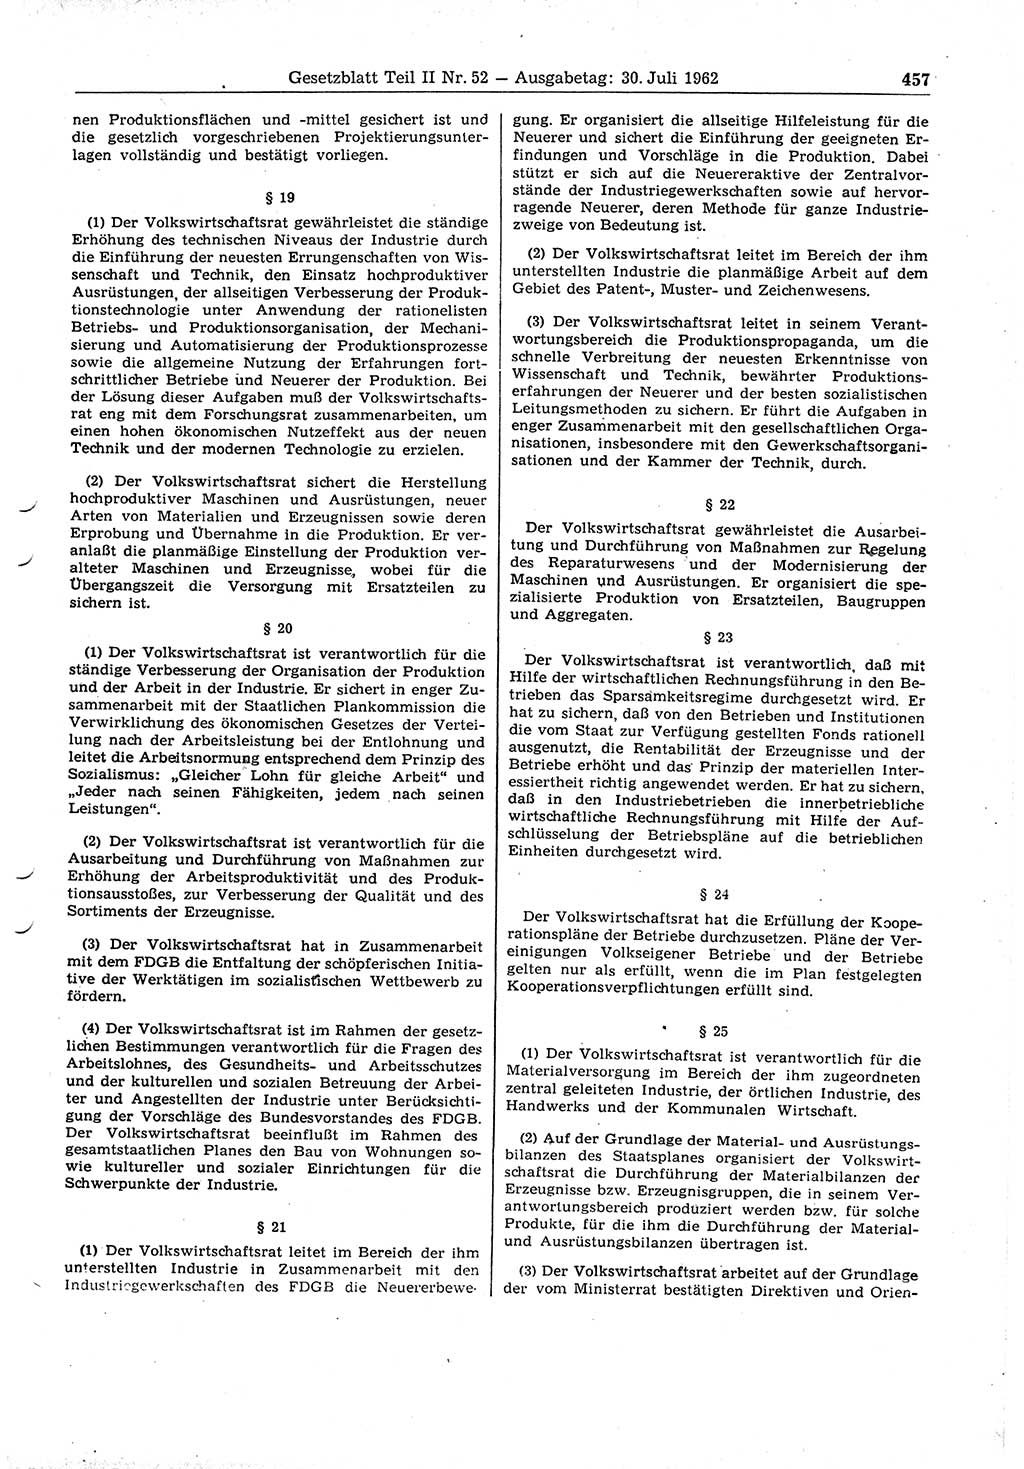 Gesetzblatt (GBl.) der Deutschen Demokratischen Republik (DDR) Teil ⅠⅠ 1962, Seite 457 (GBl. DDR ⅠⅠ 1962, S. 457)